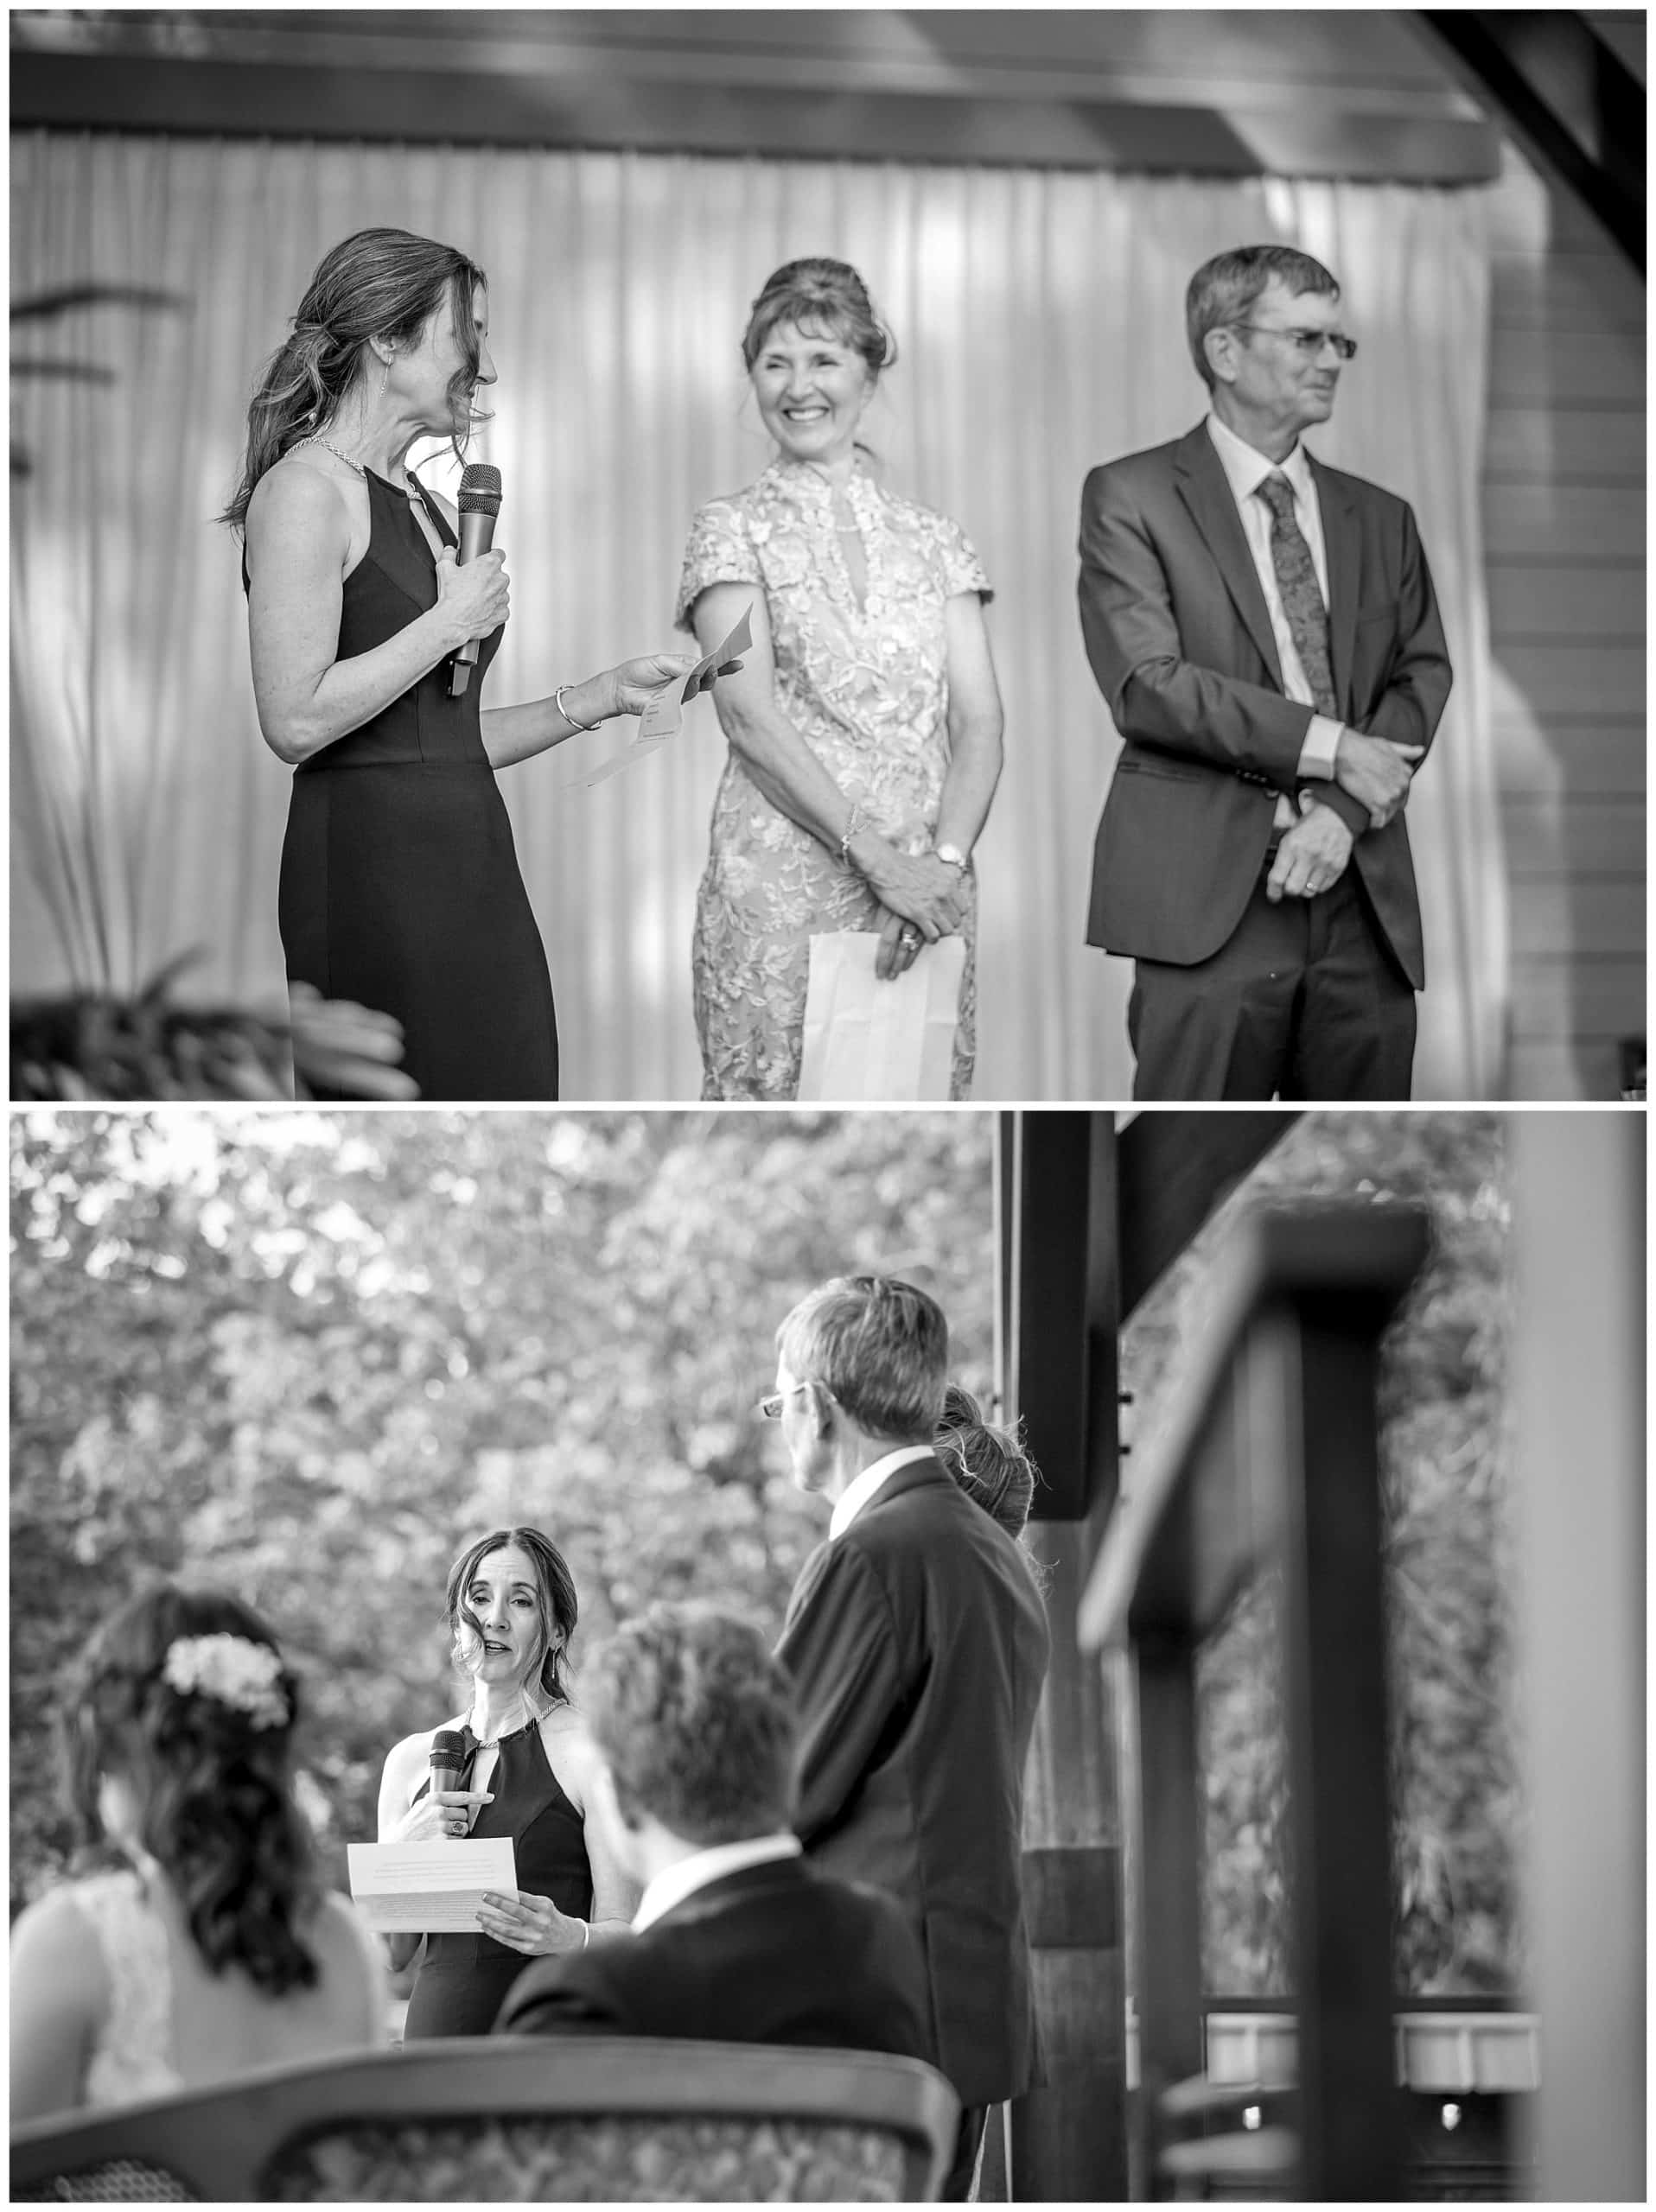 Kathy Beaver Photography photographs wedding toasts at Haiku wedding venue